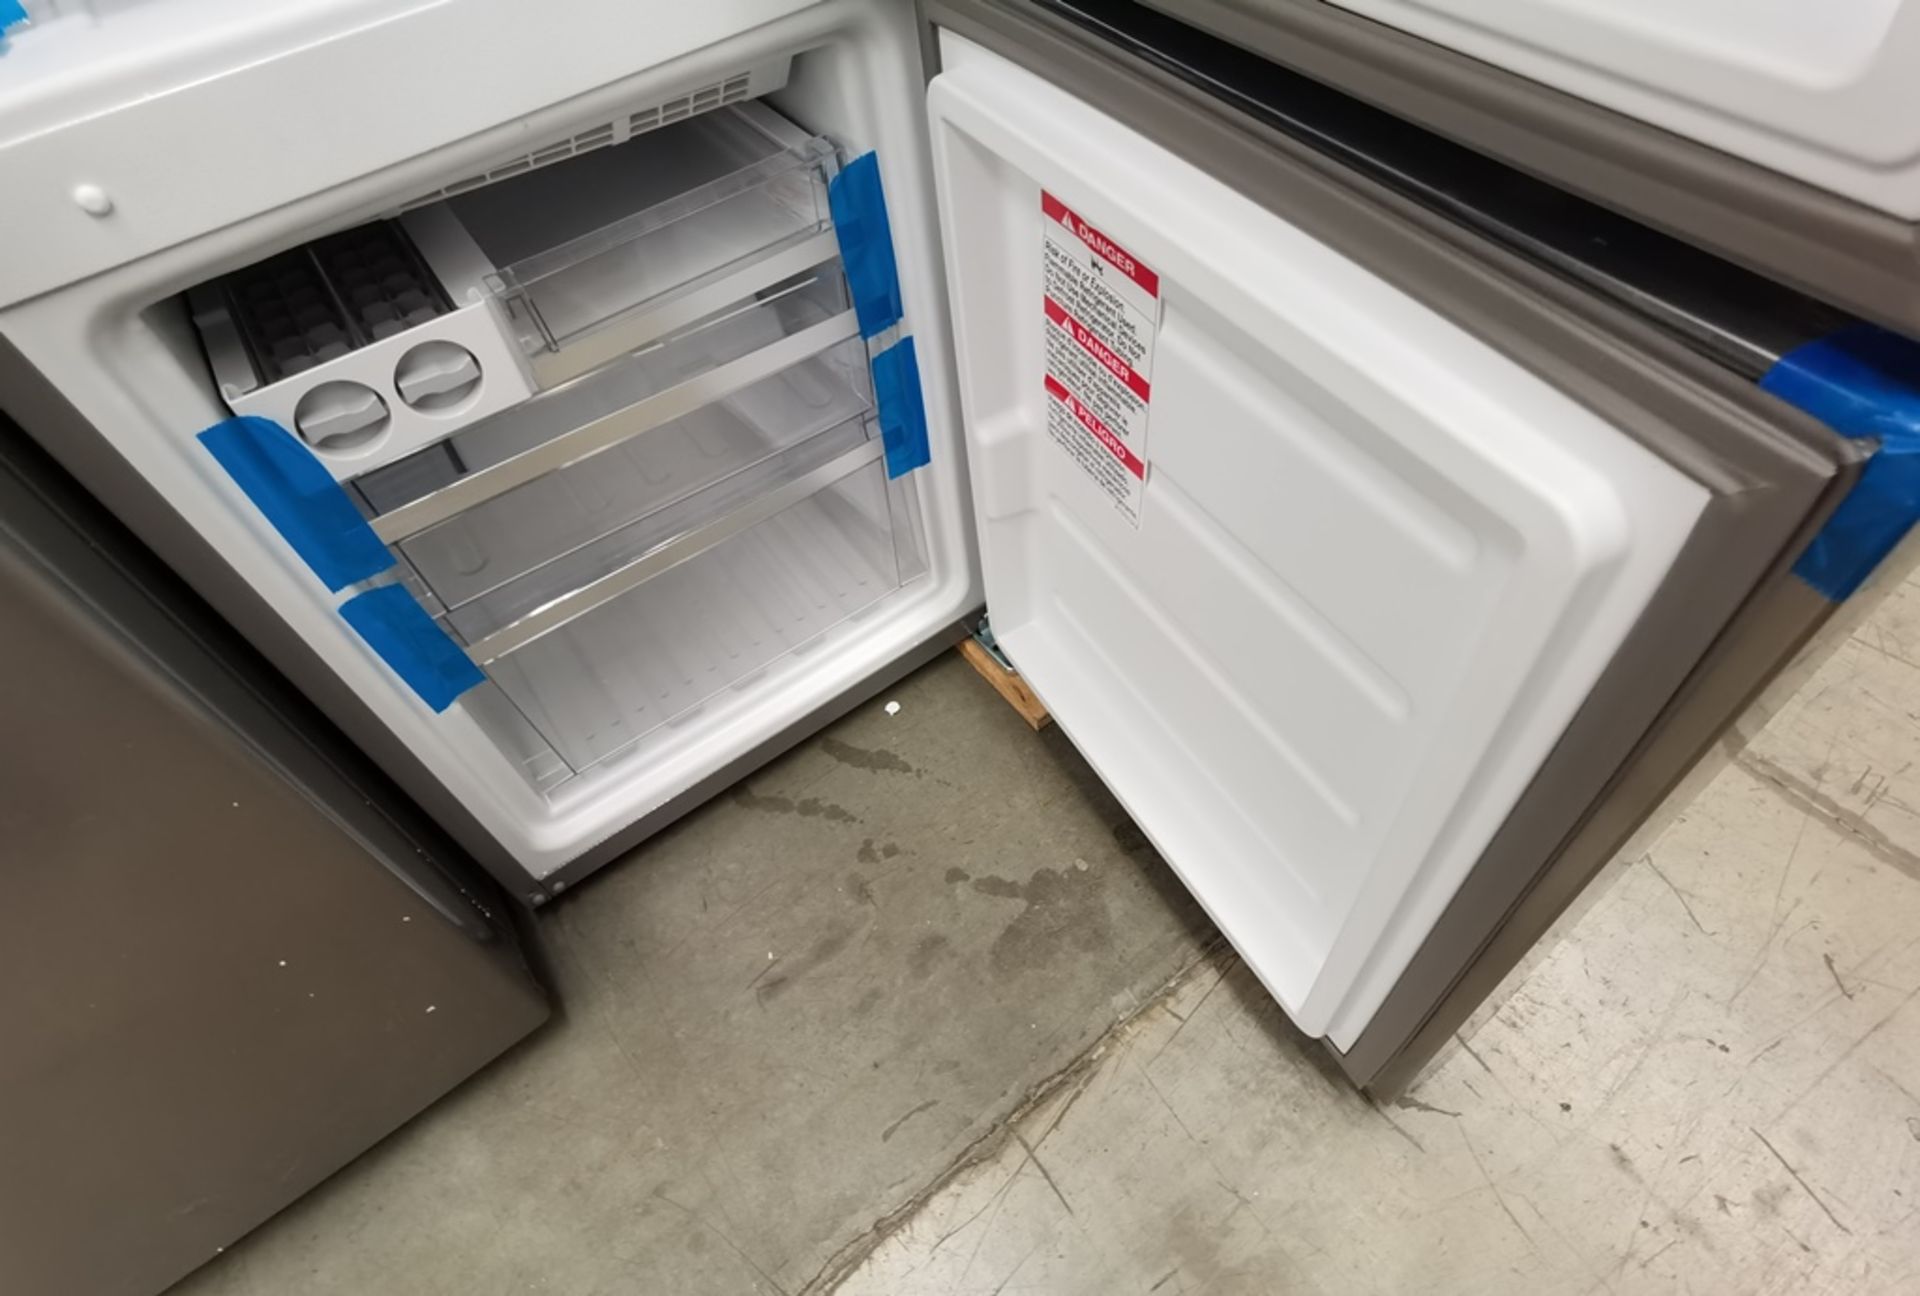 Lote De 2 Refrigeradores Contiene: 1 Refrigerador Marca Whirlpool Modelo WB1333A, Serie VSB2339114, - Image 8 of 14